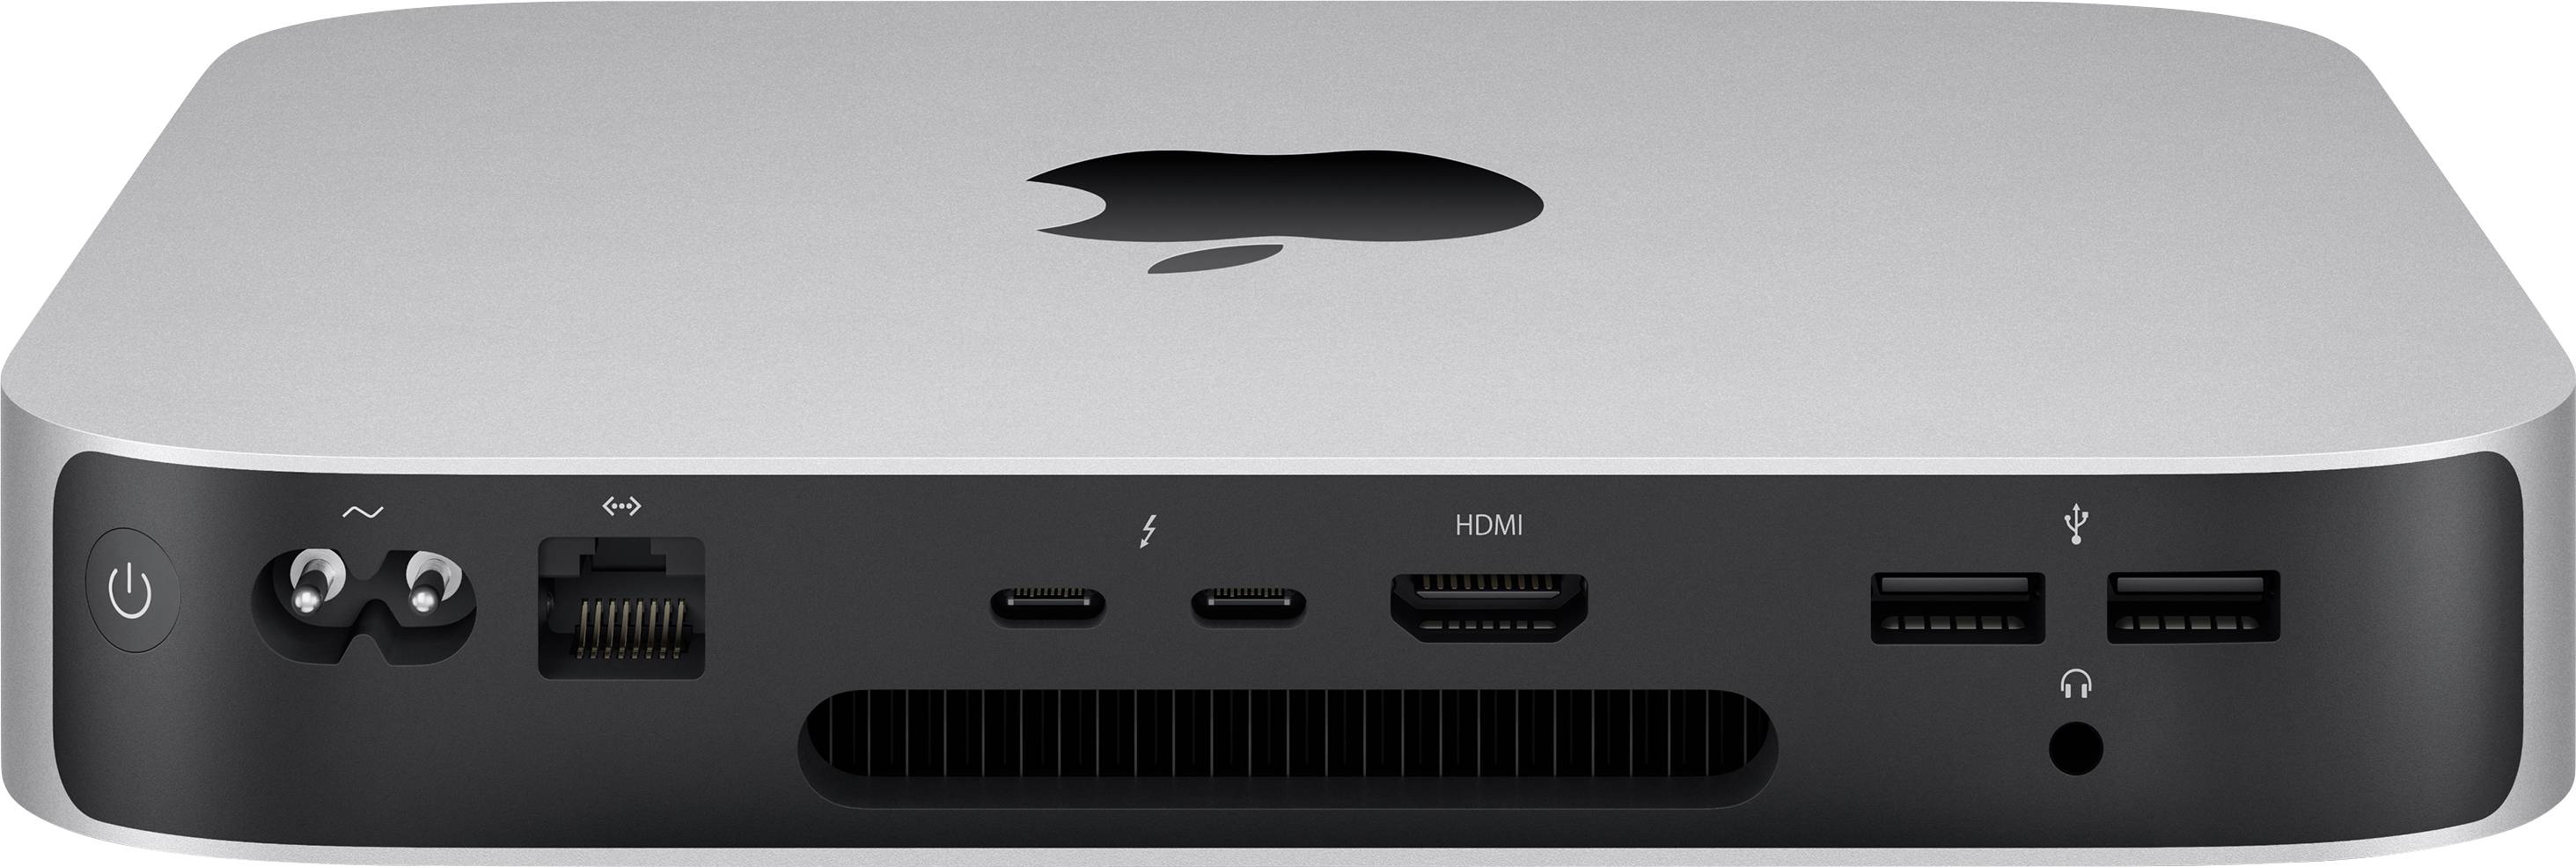 【美品】Apple Mac mini 2020 CTO